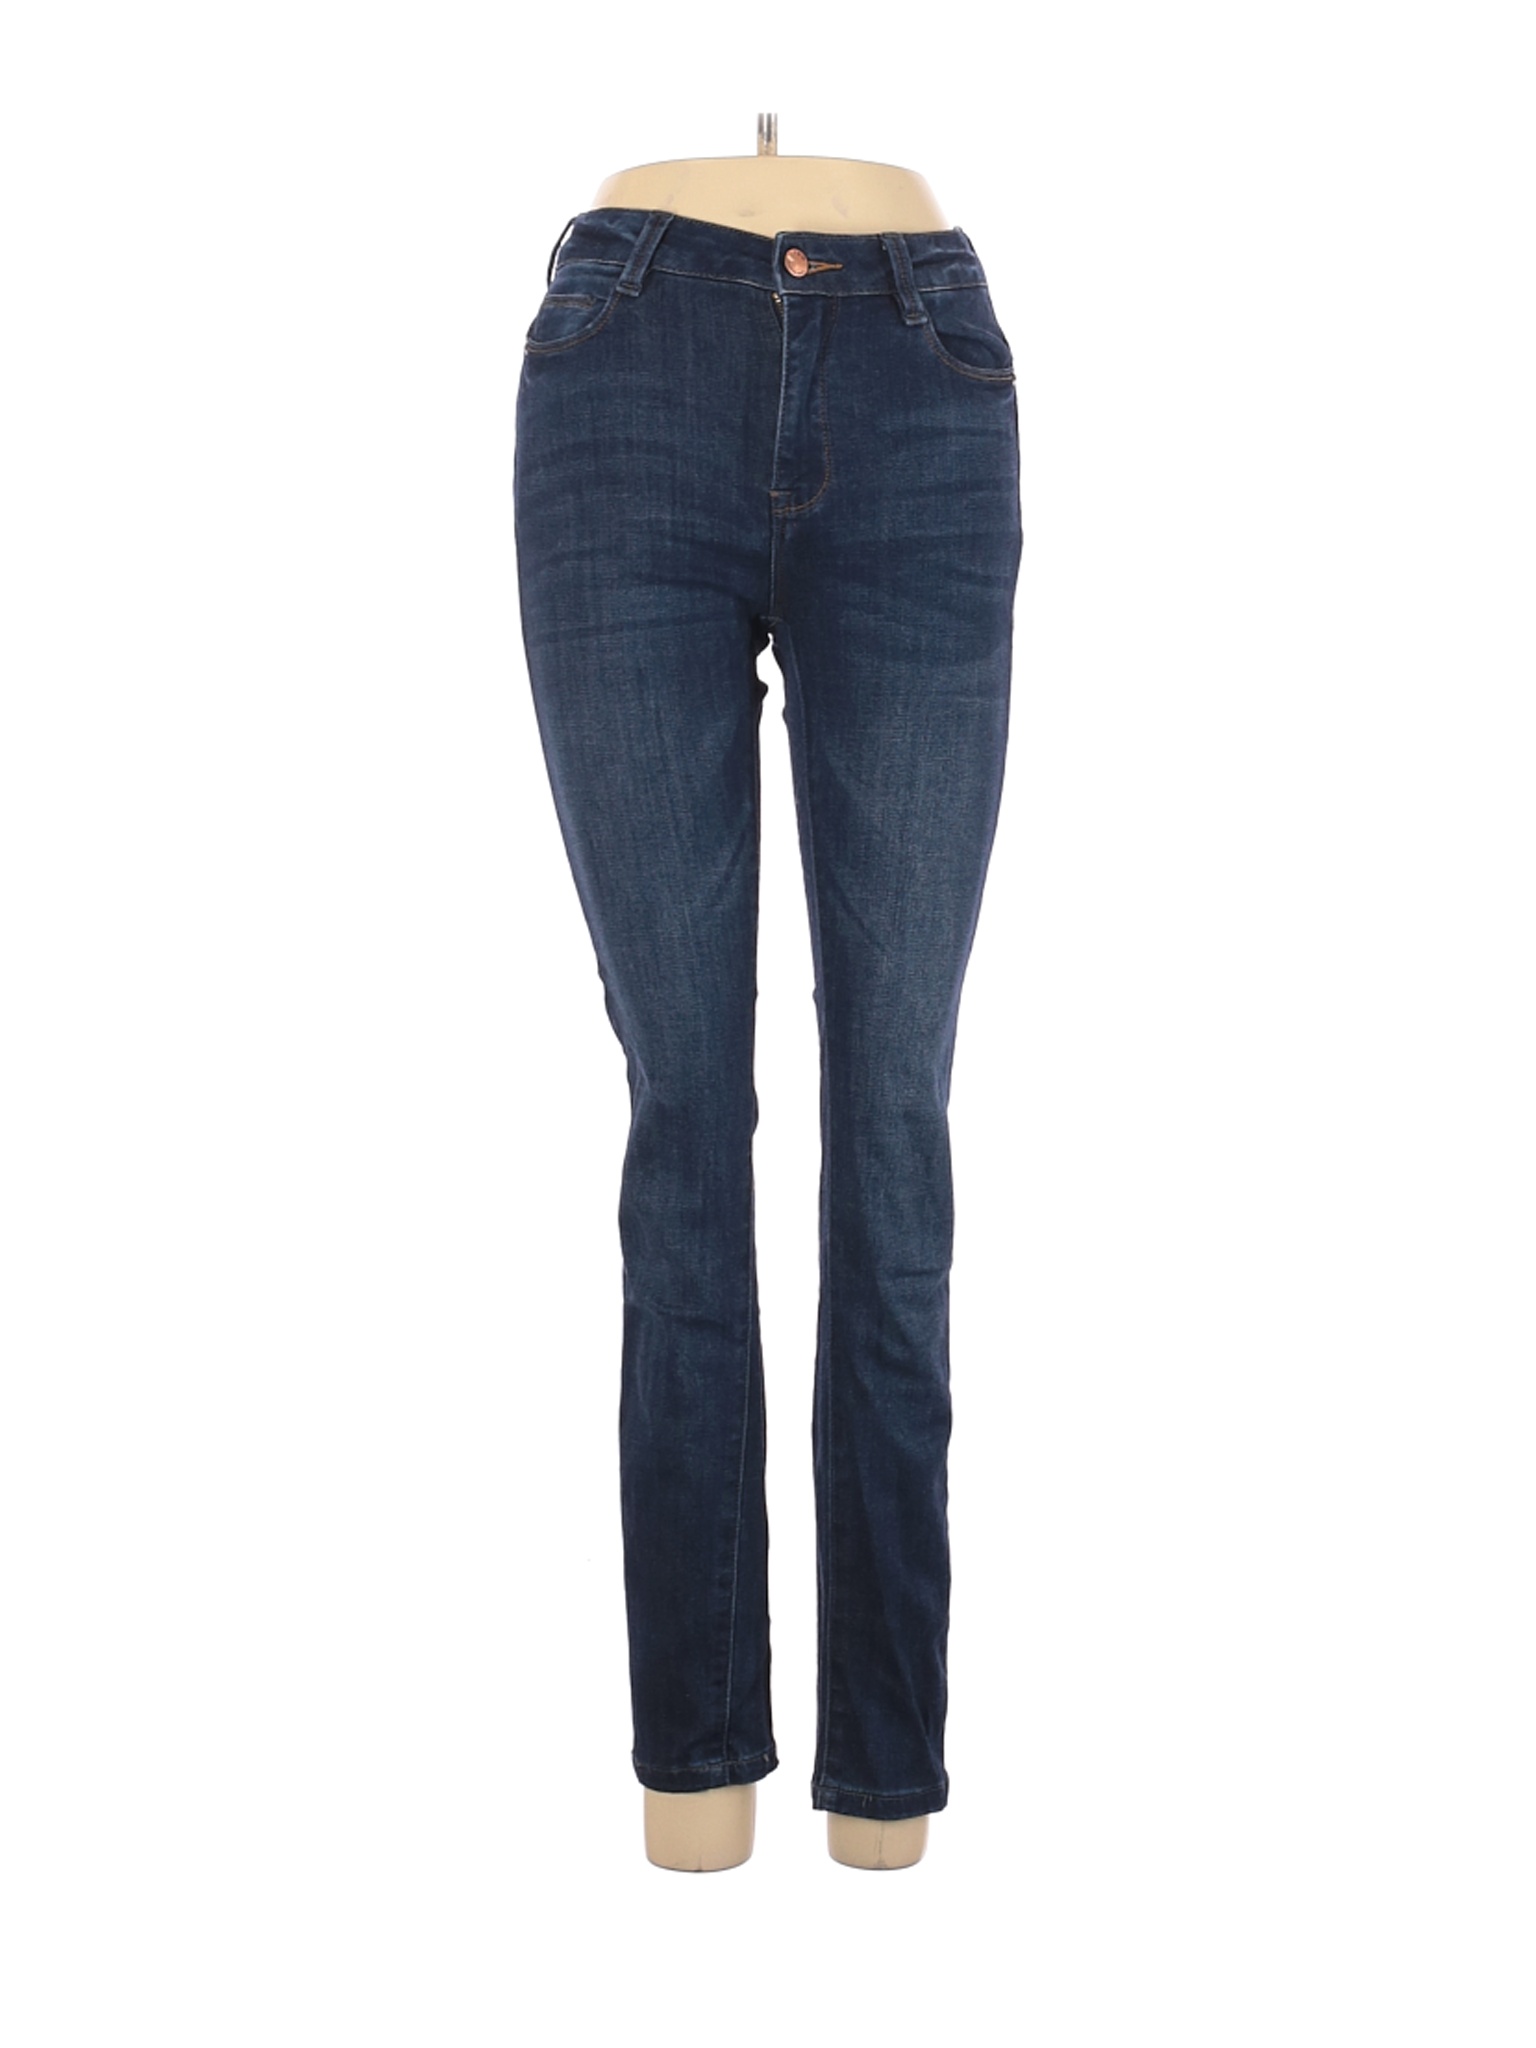 I&M Jeans Women Blue Jeans 3 | eBay